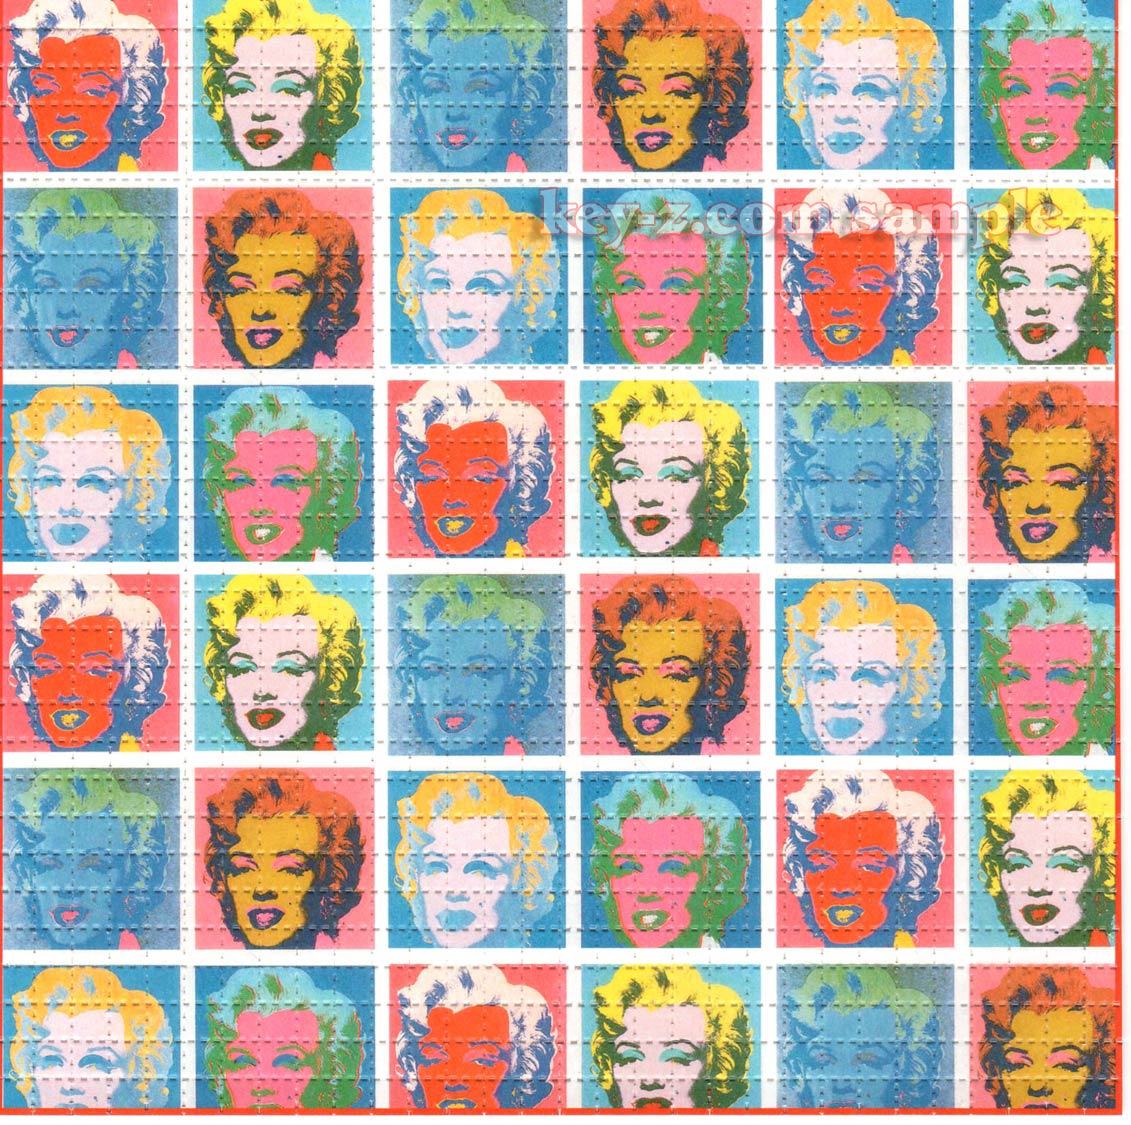 Marilyn Pop Art LSD blotter art print